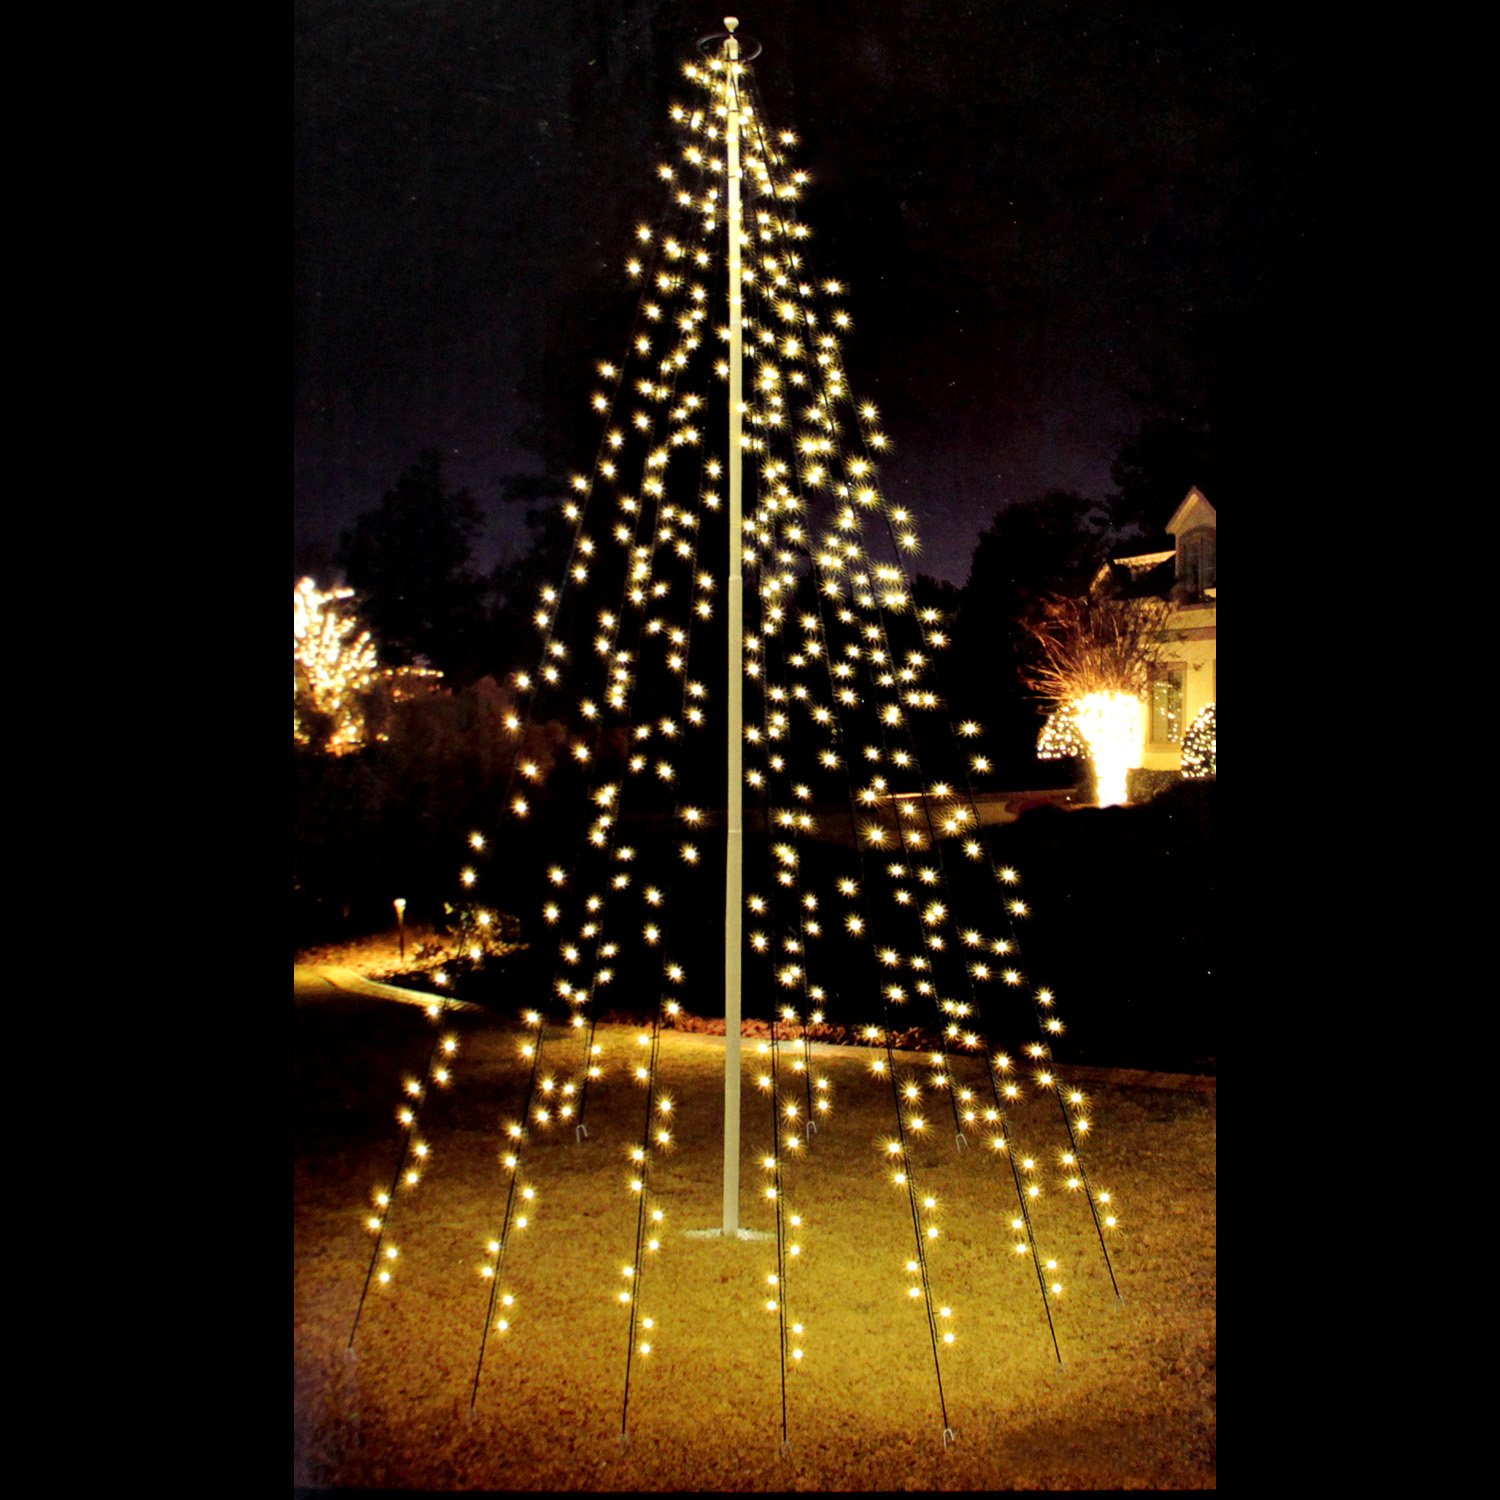 Multistore 2002 Fahnenmast Lichterkette - 360 LED`s, 10 Stränge a 8m, warmweisses Licht - Fahnenstangen Beleuchtung Weihnachtsdekoration Weihnachtsbaumbeleuchtung